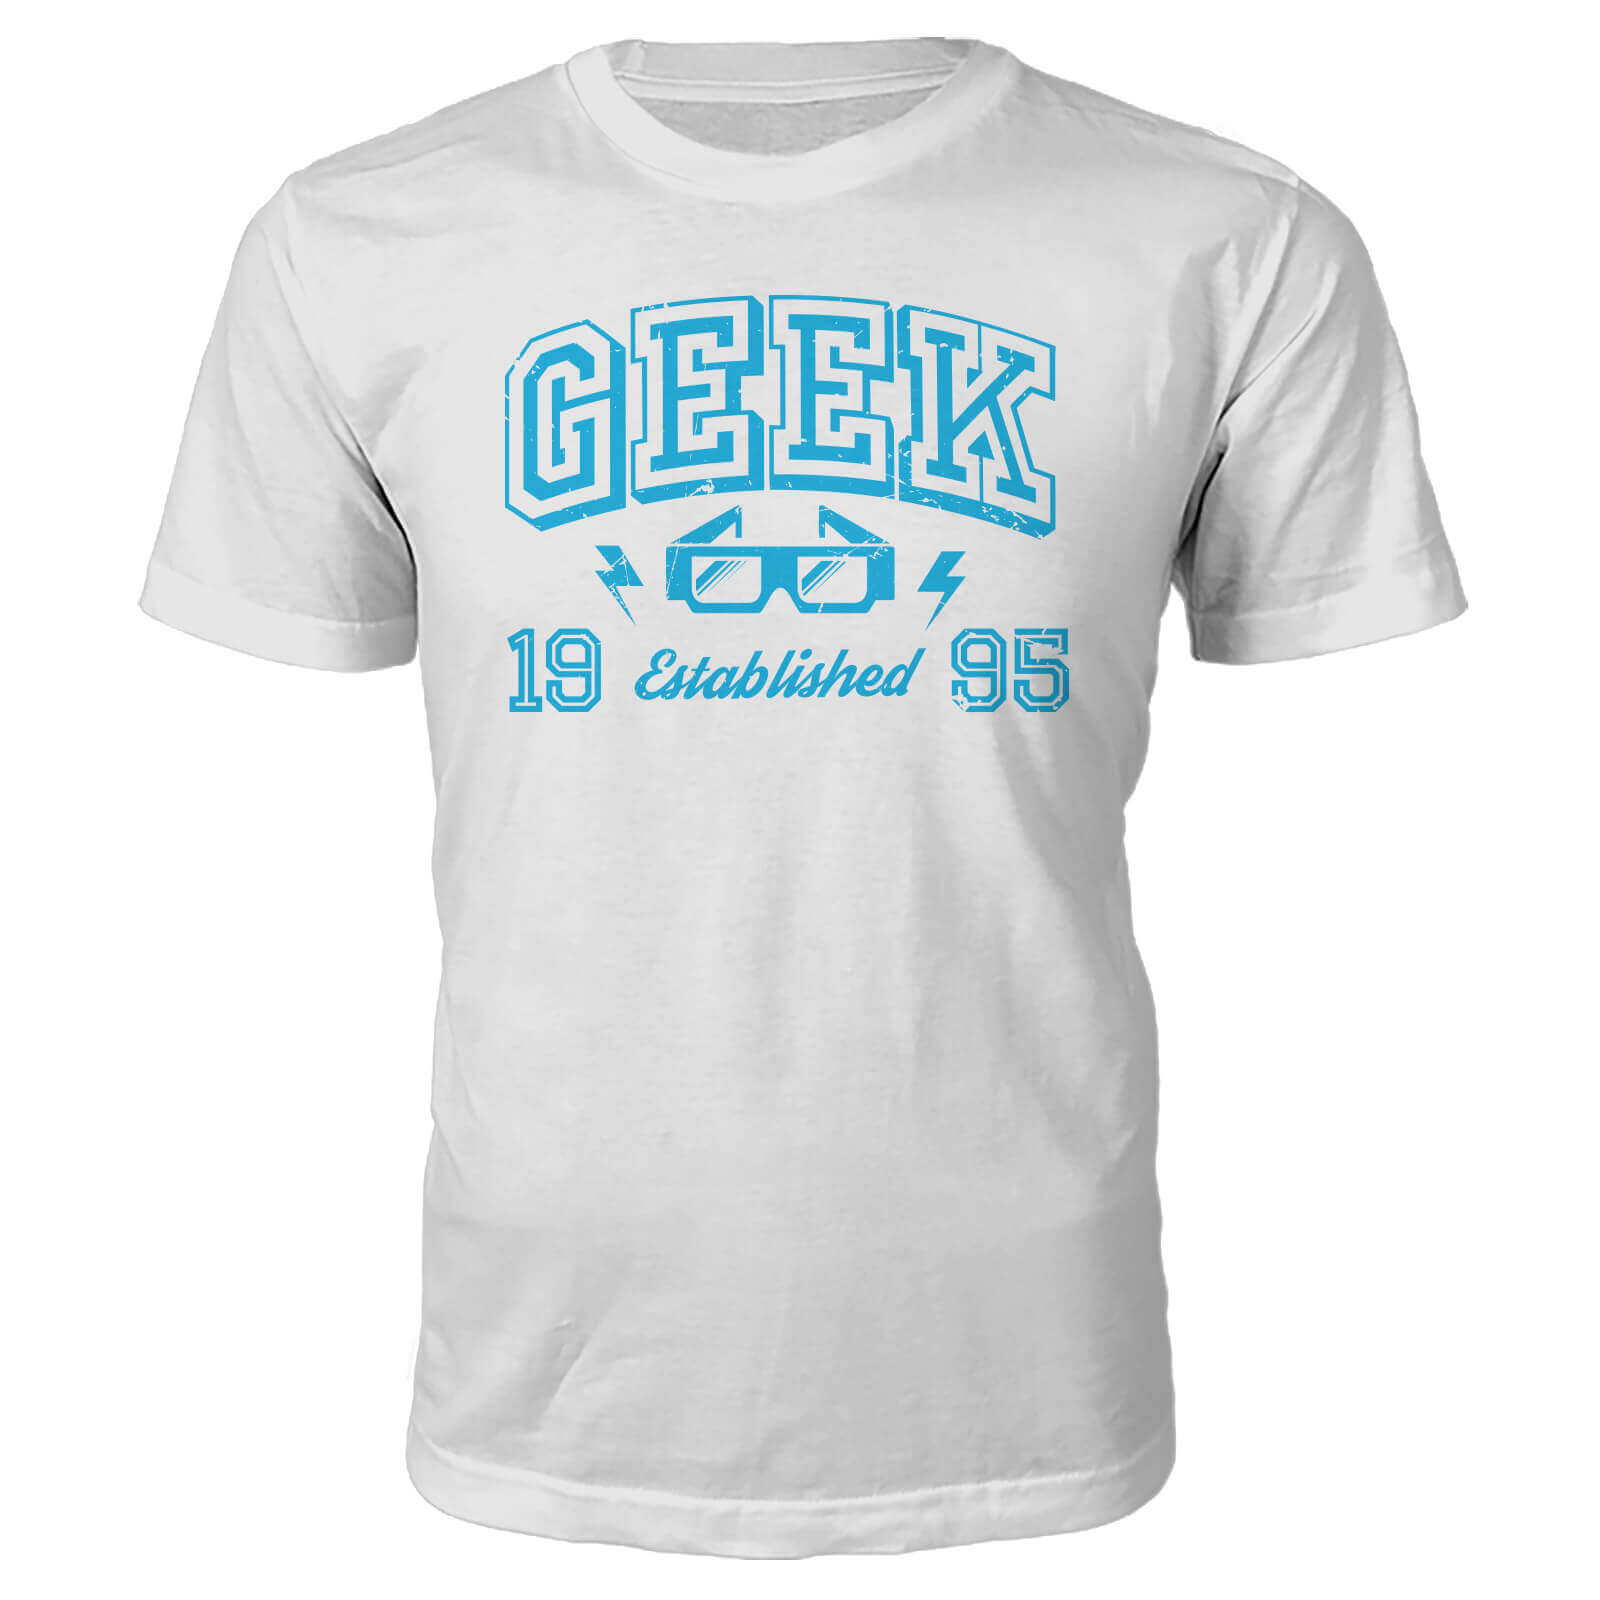 Geek Established 1990's T-Shirt- White - M - 1995